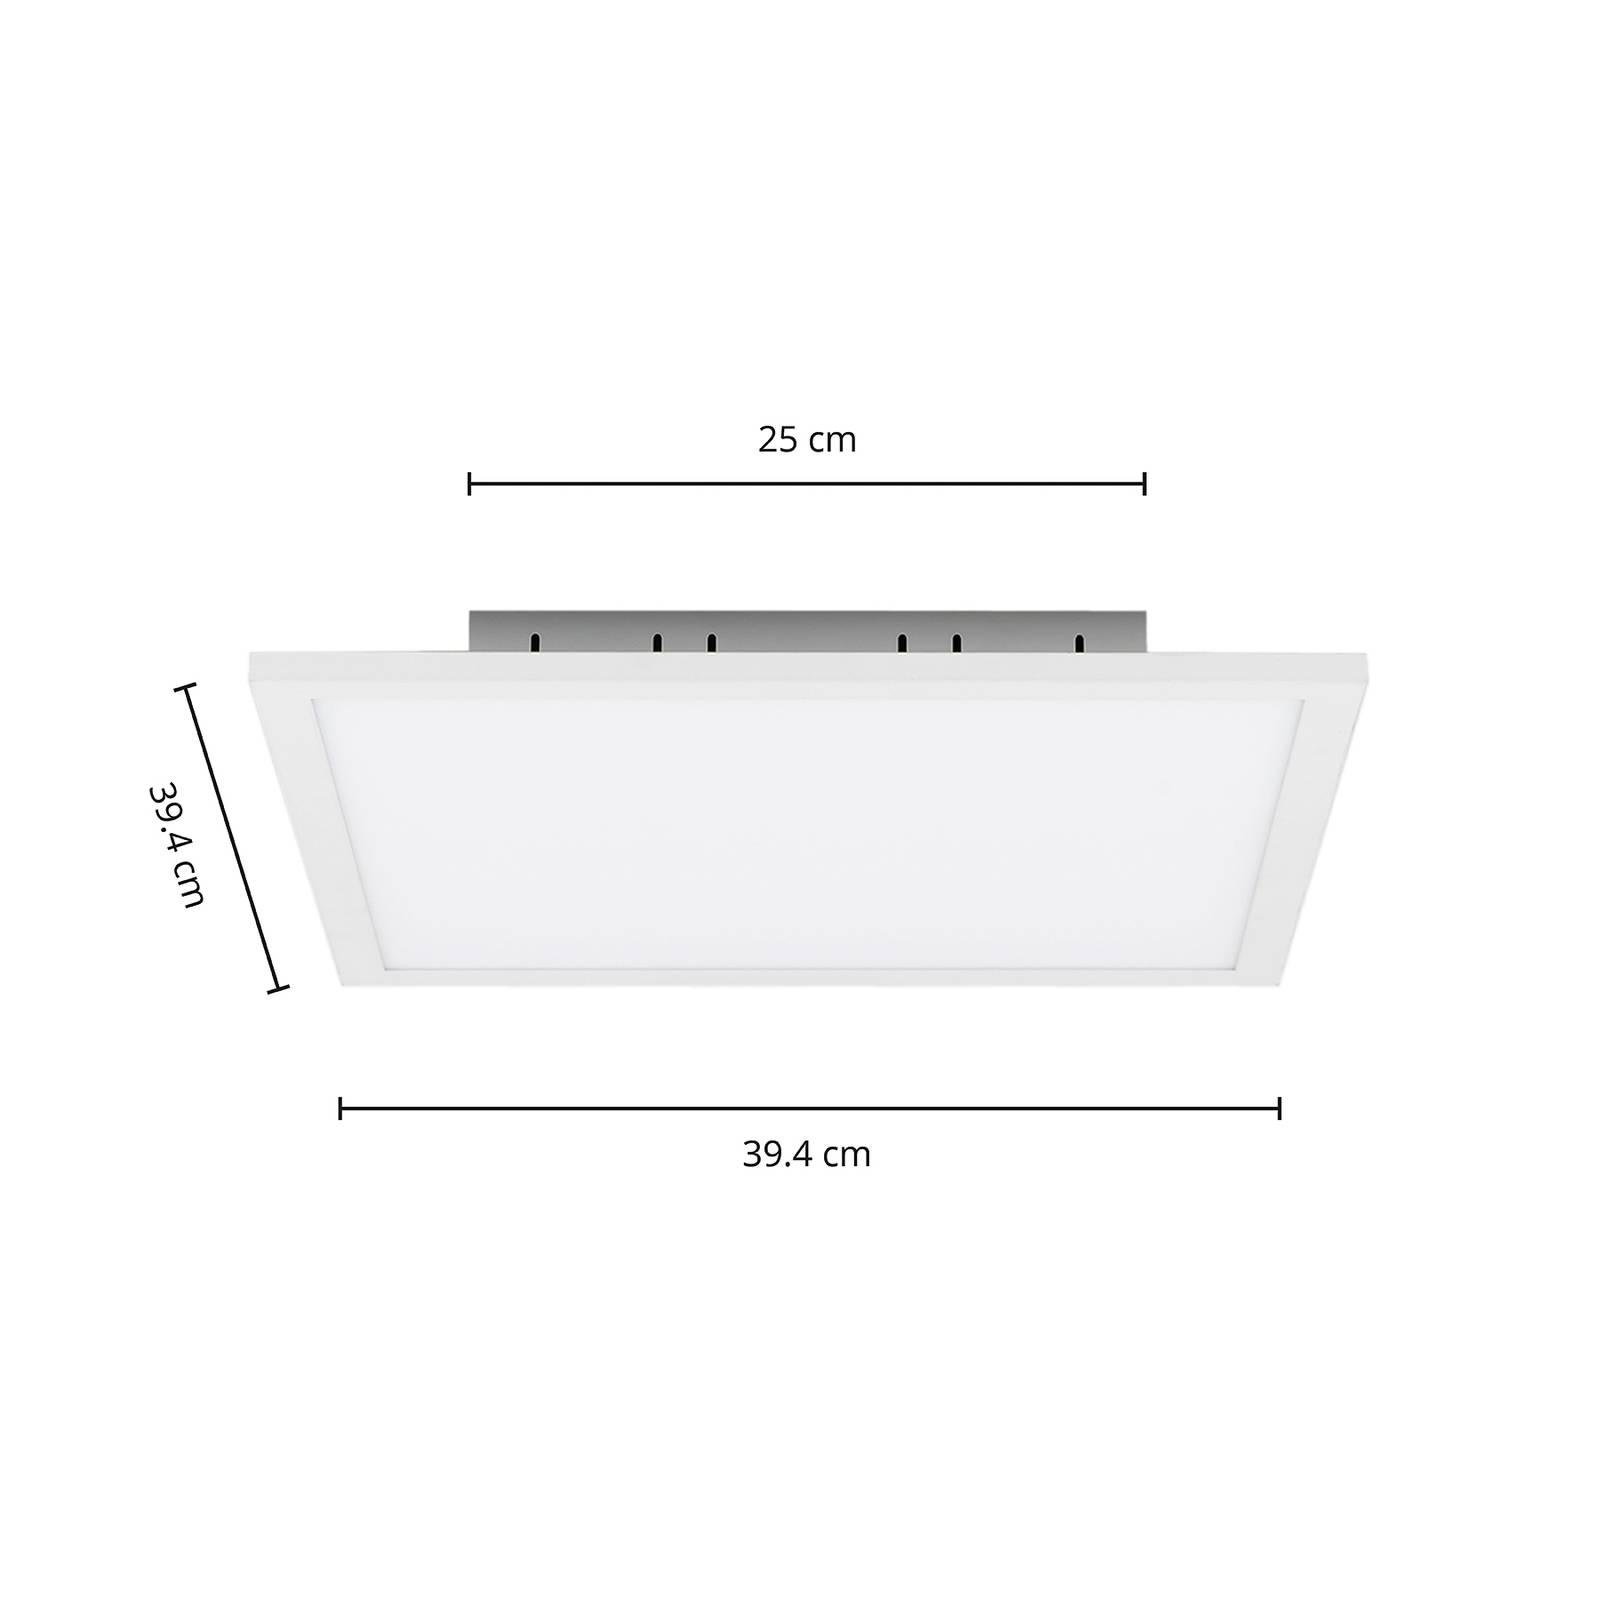 E-shop Arcchio Lysander LED panel, CCT, 39 cm, biela